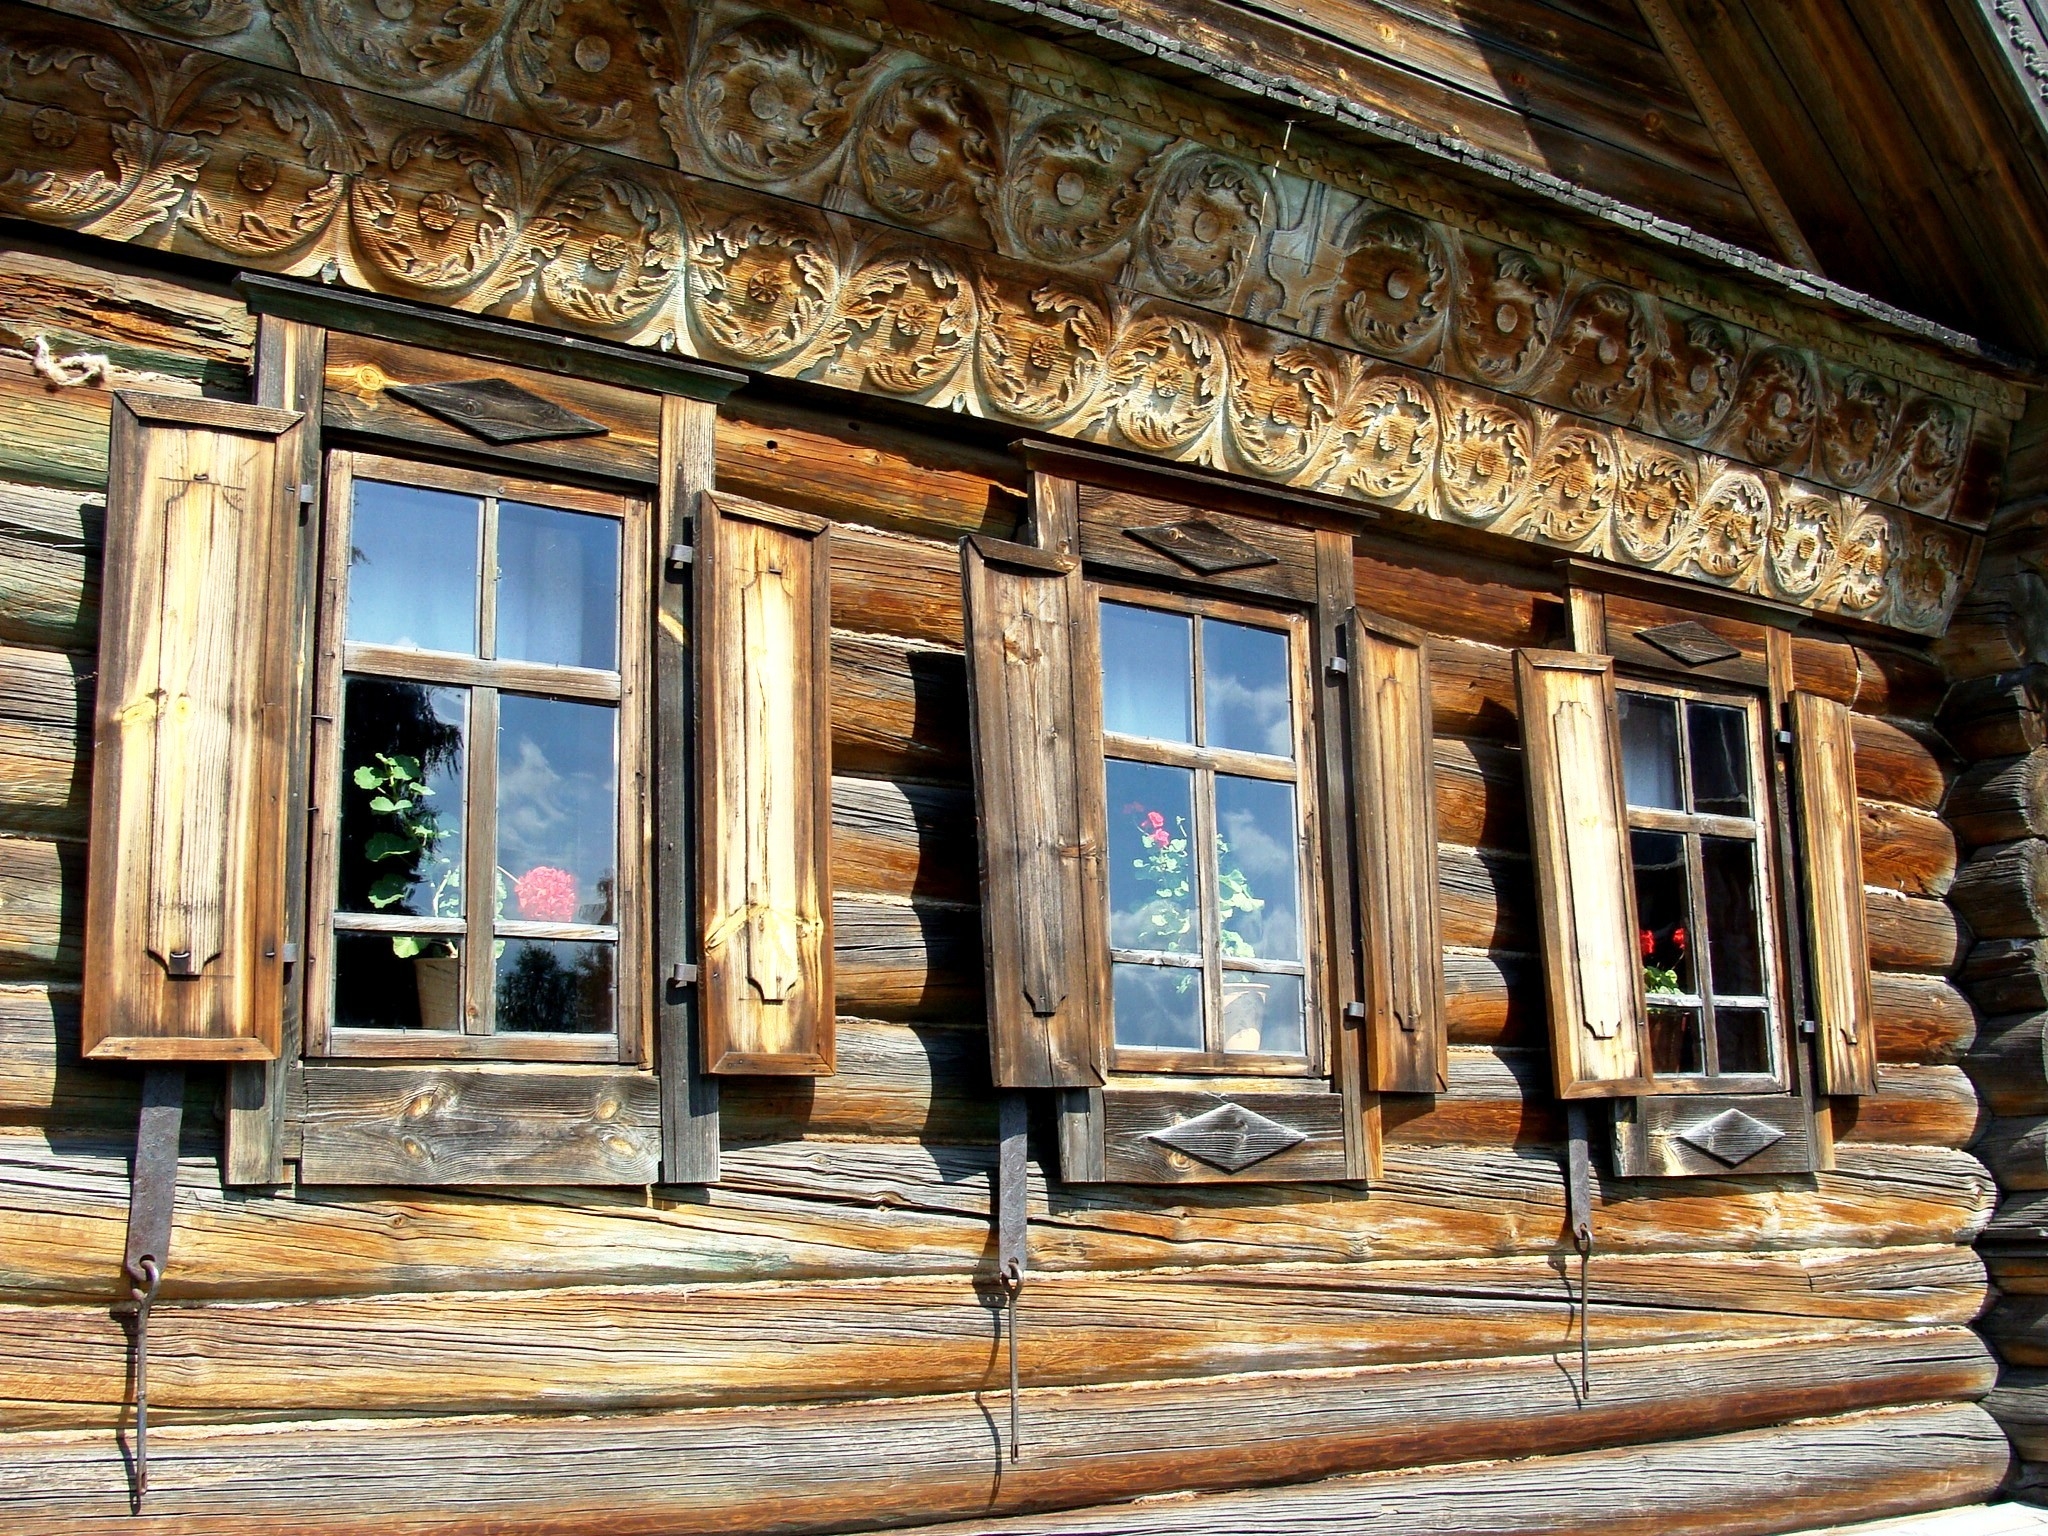 Возле избы. Крестьянская изба 18-19 века. Окно деревянное 19 век. Музей деревянная резьба наличников Иркутск. Окна избы 17 века.